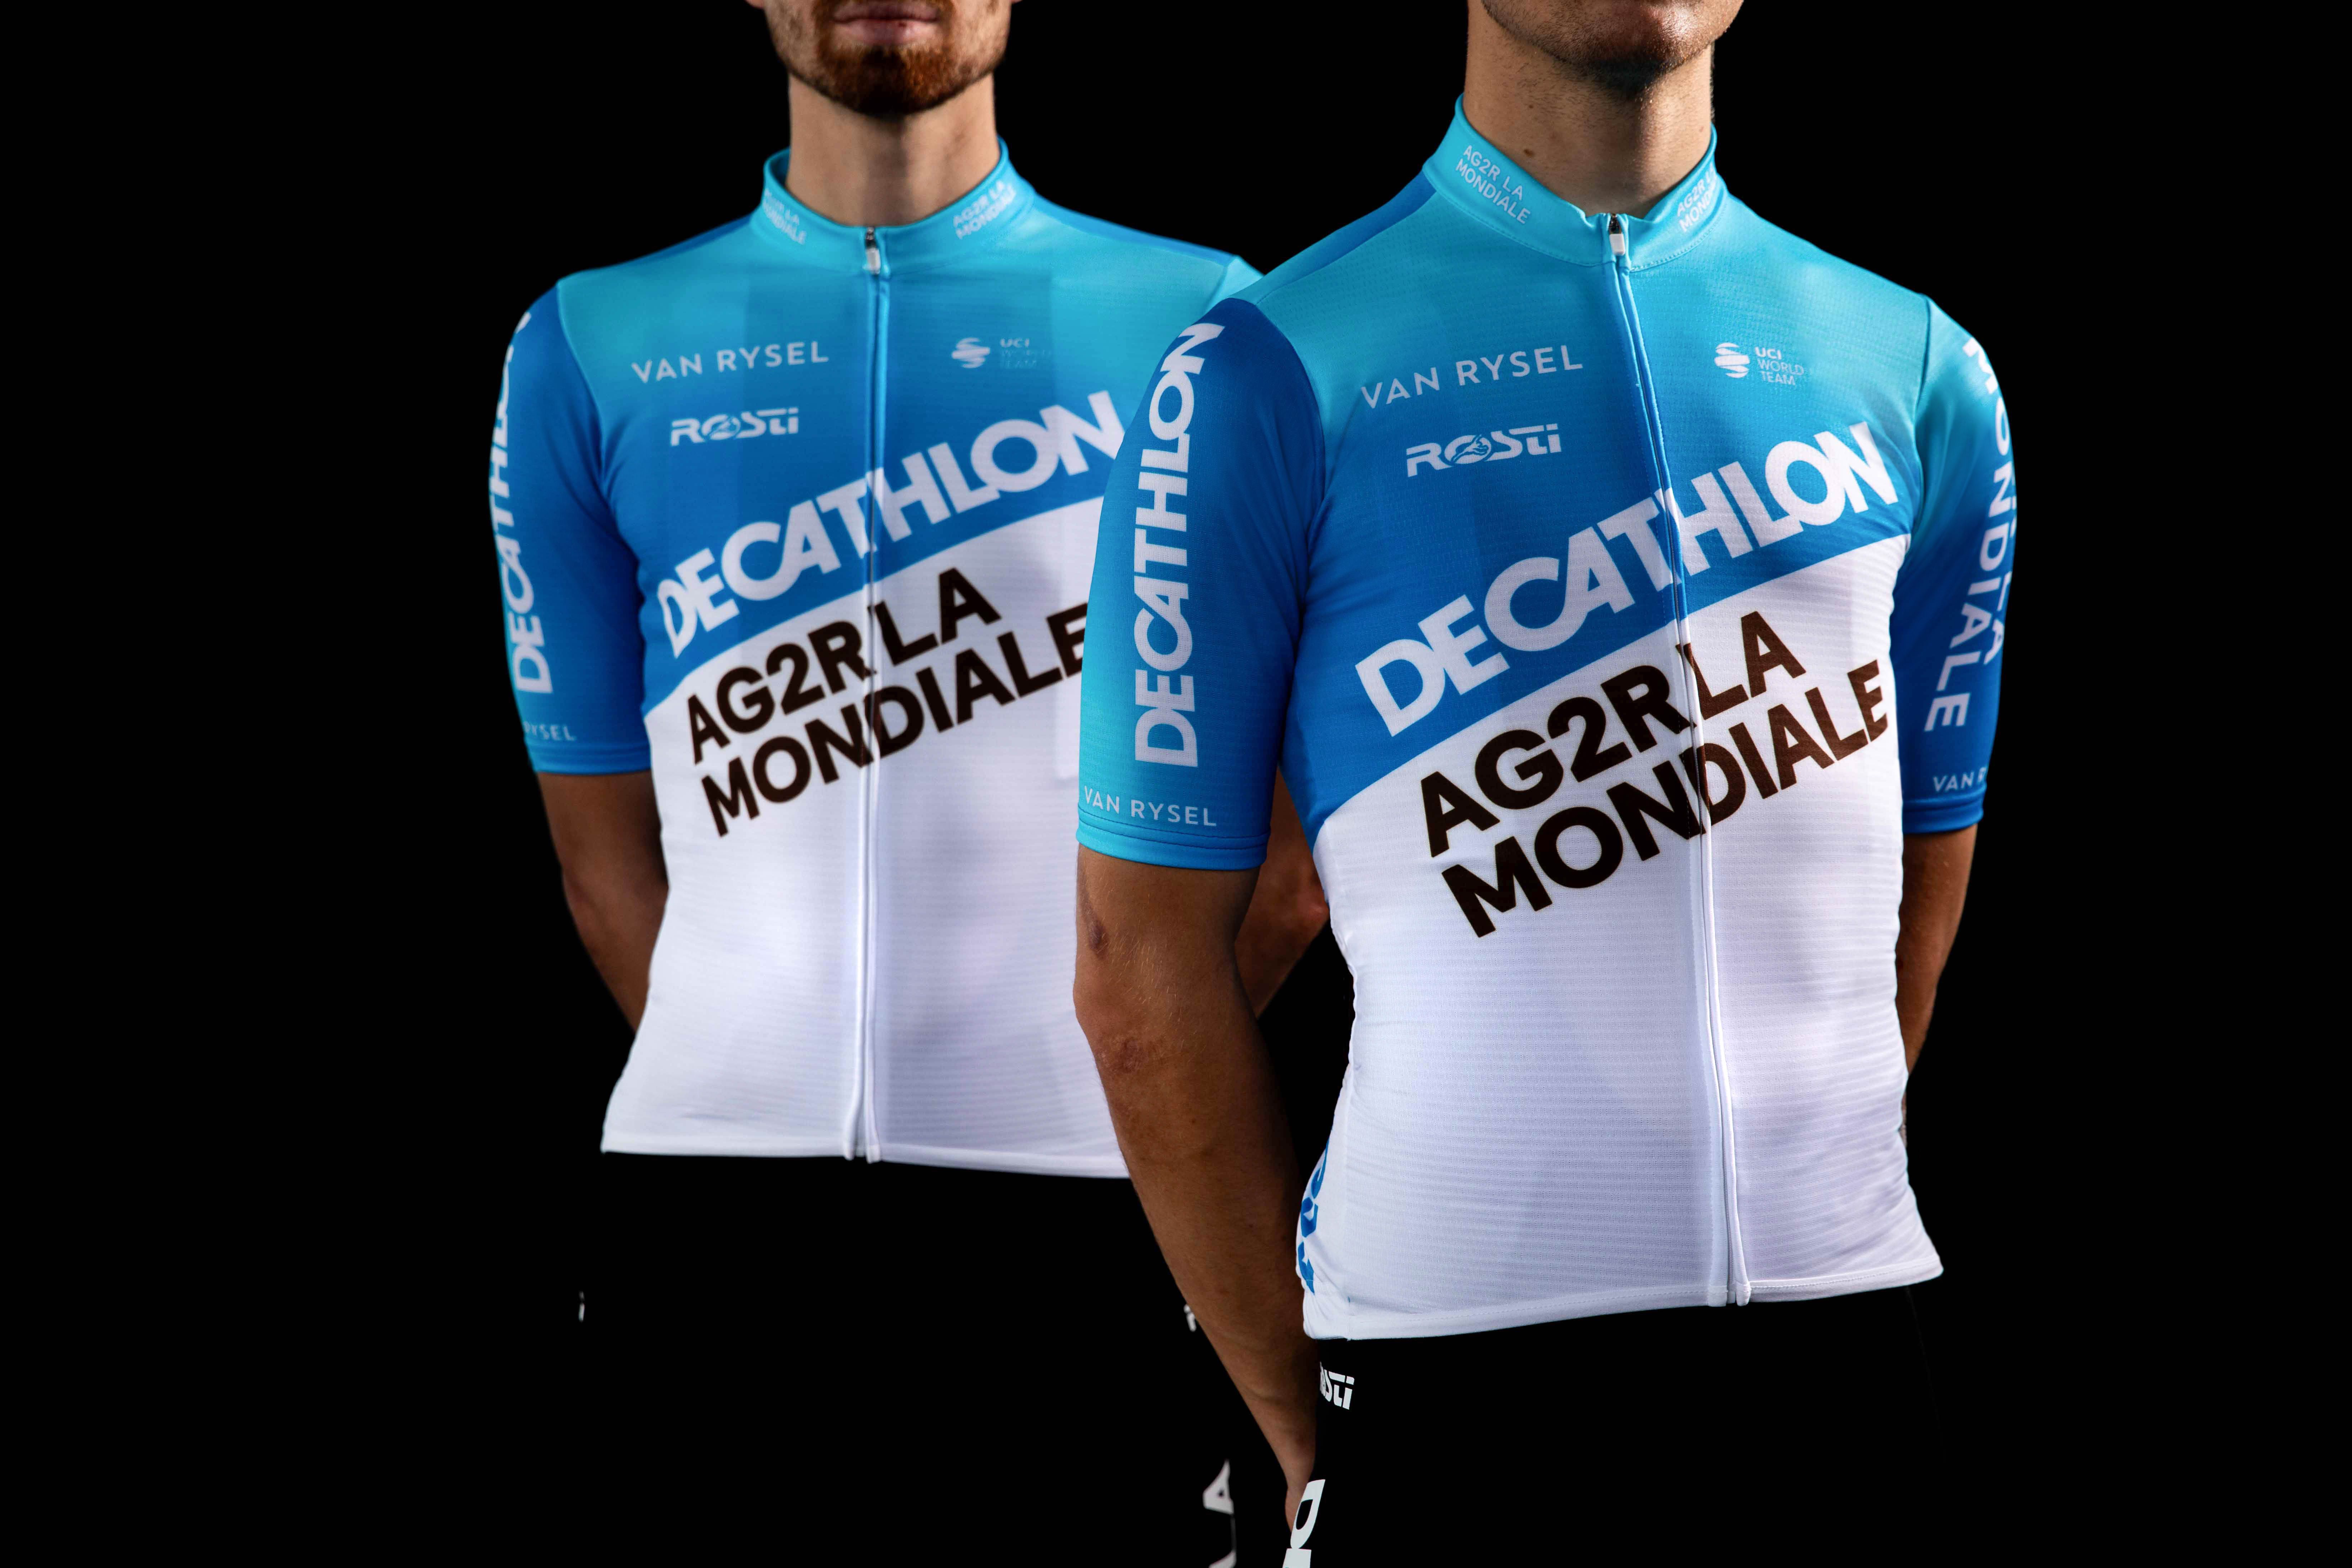 Calcetines Decathlon-AG2R La Mondiale Grand Tour 2024